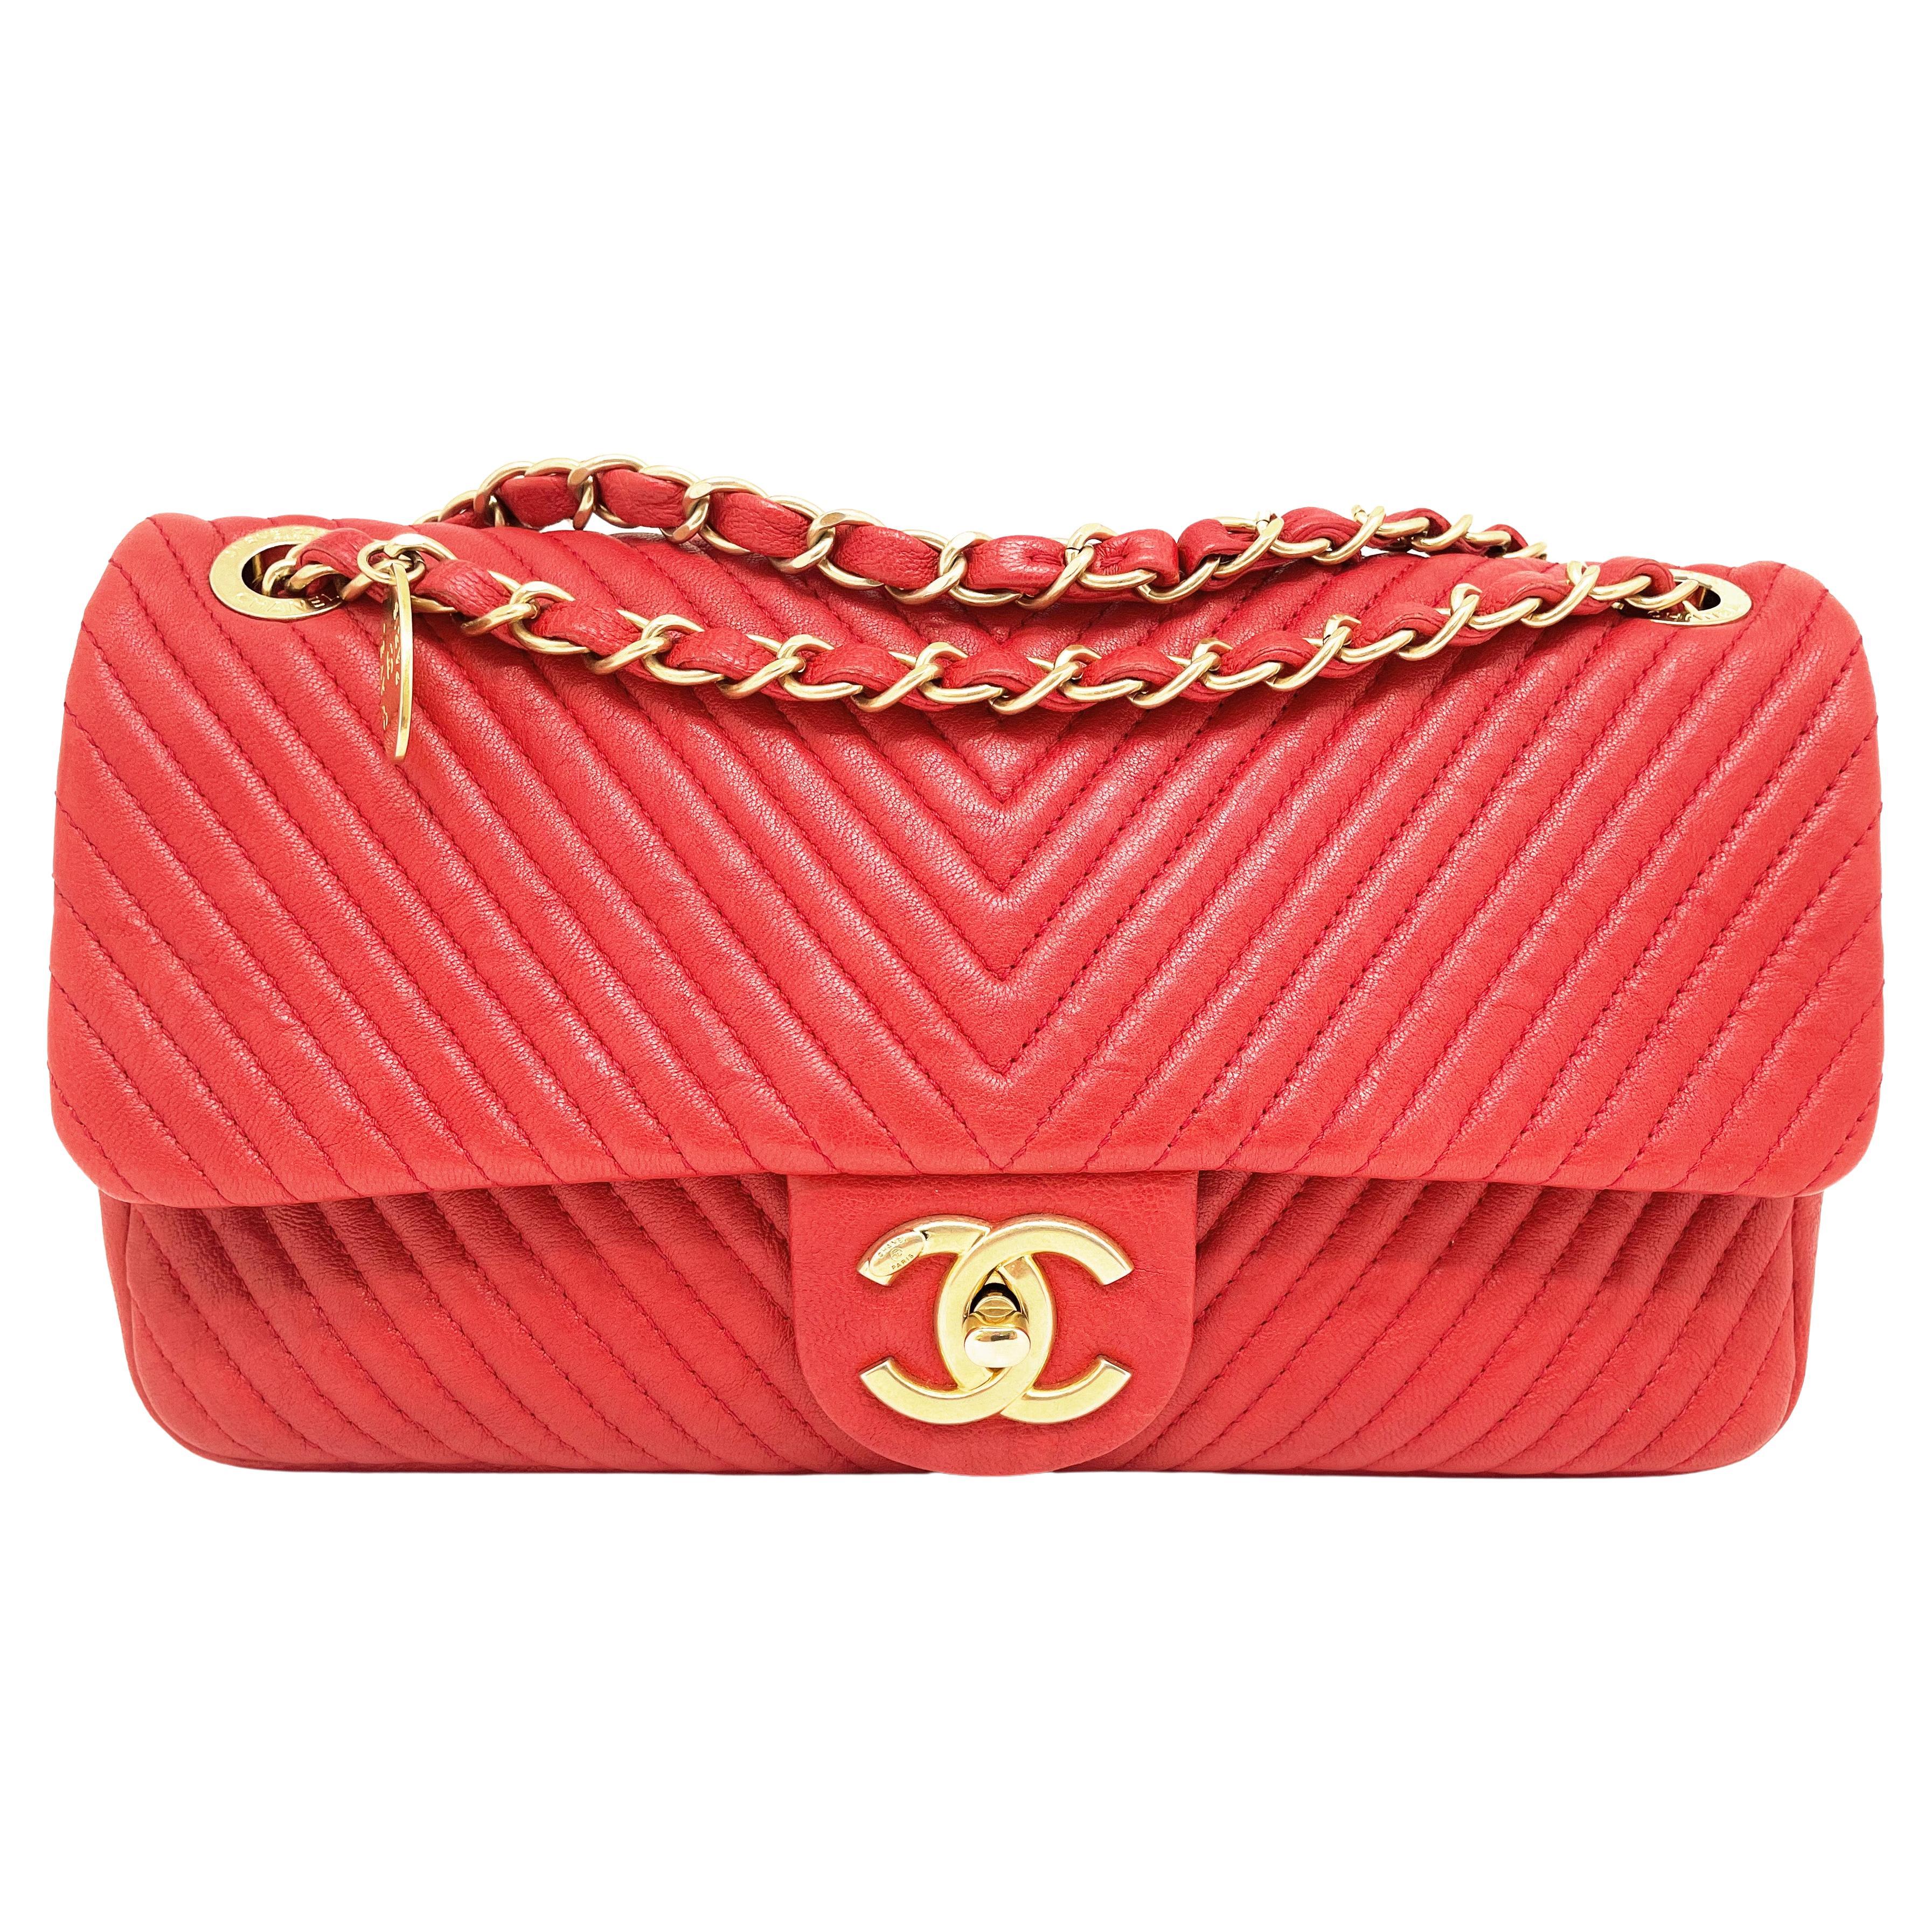 Superbe sac Chanel 27 cm en cuir et motif chevron rouge Valentine